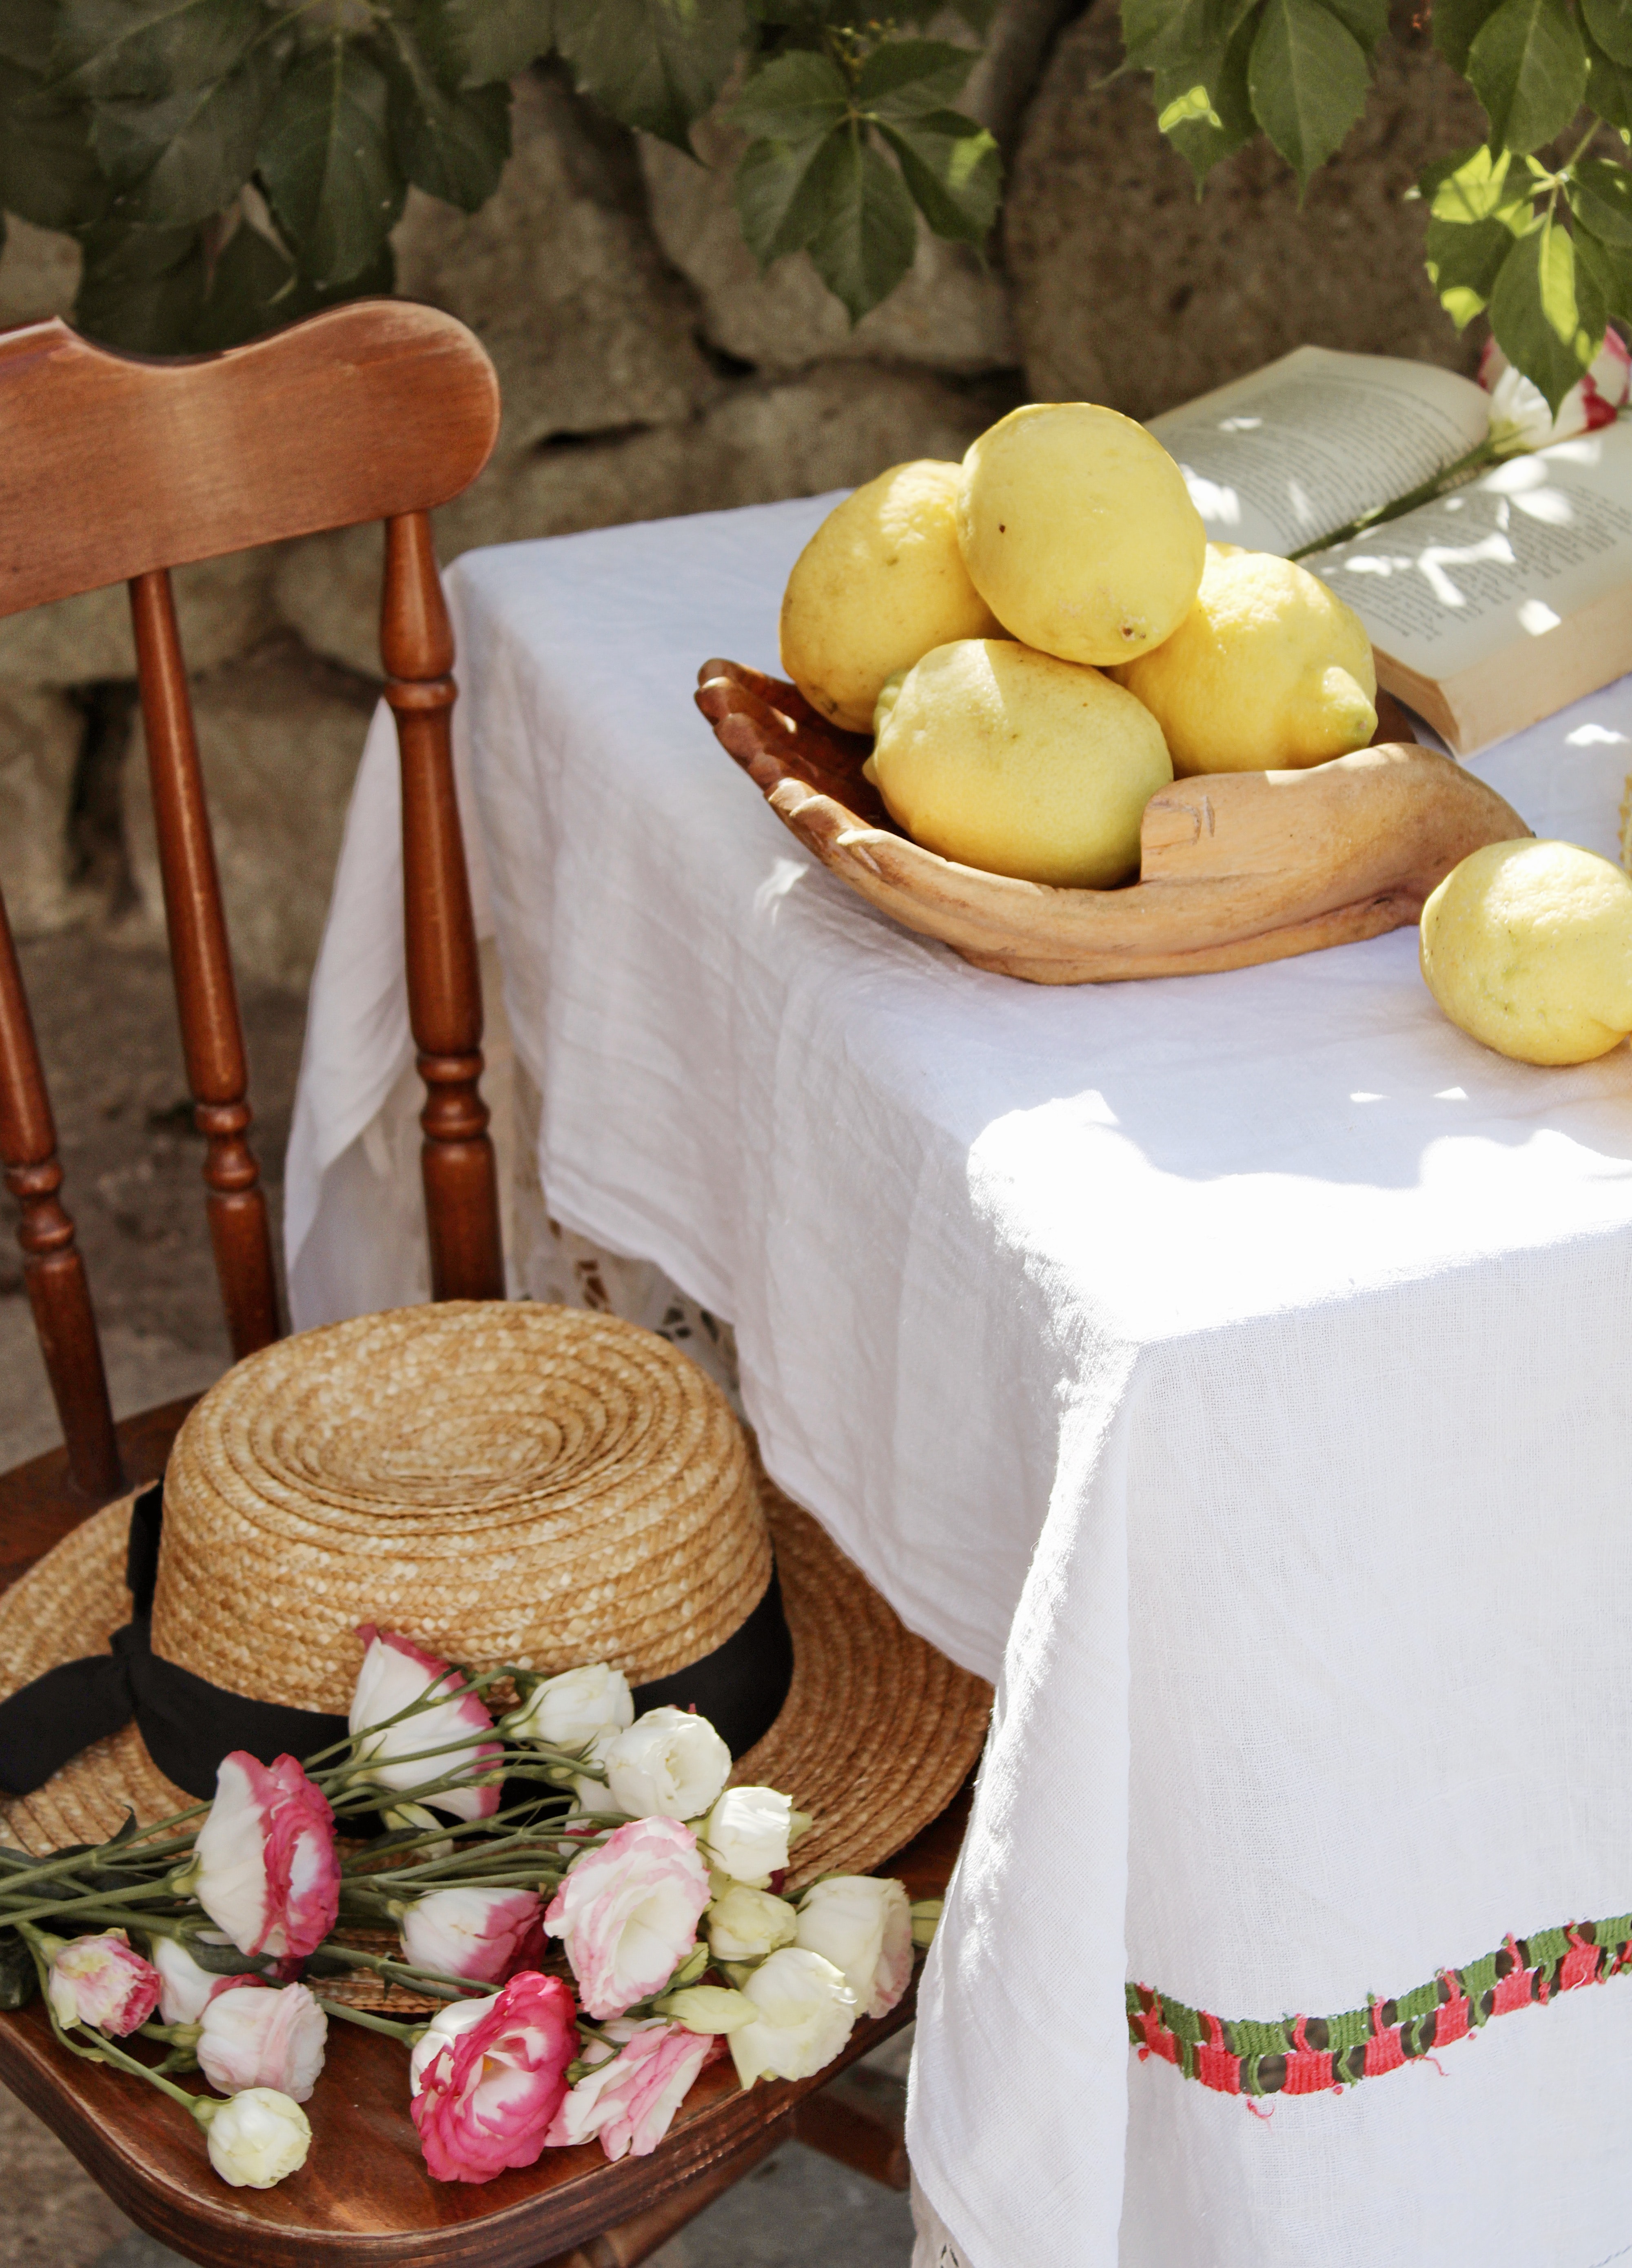 flowers, lemons, miscellanea, miscellaneous, chair, table, citrus, hat, citruses